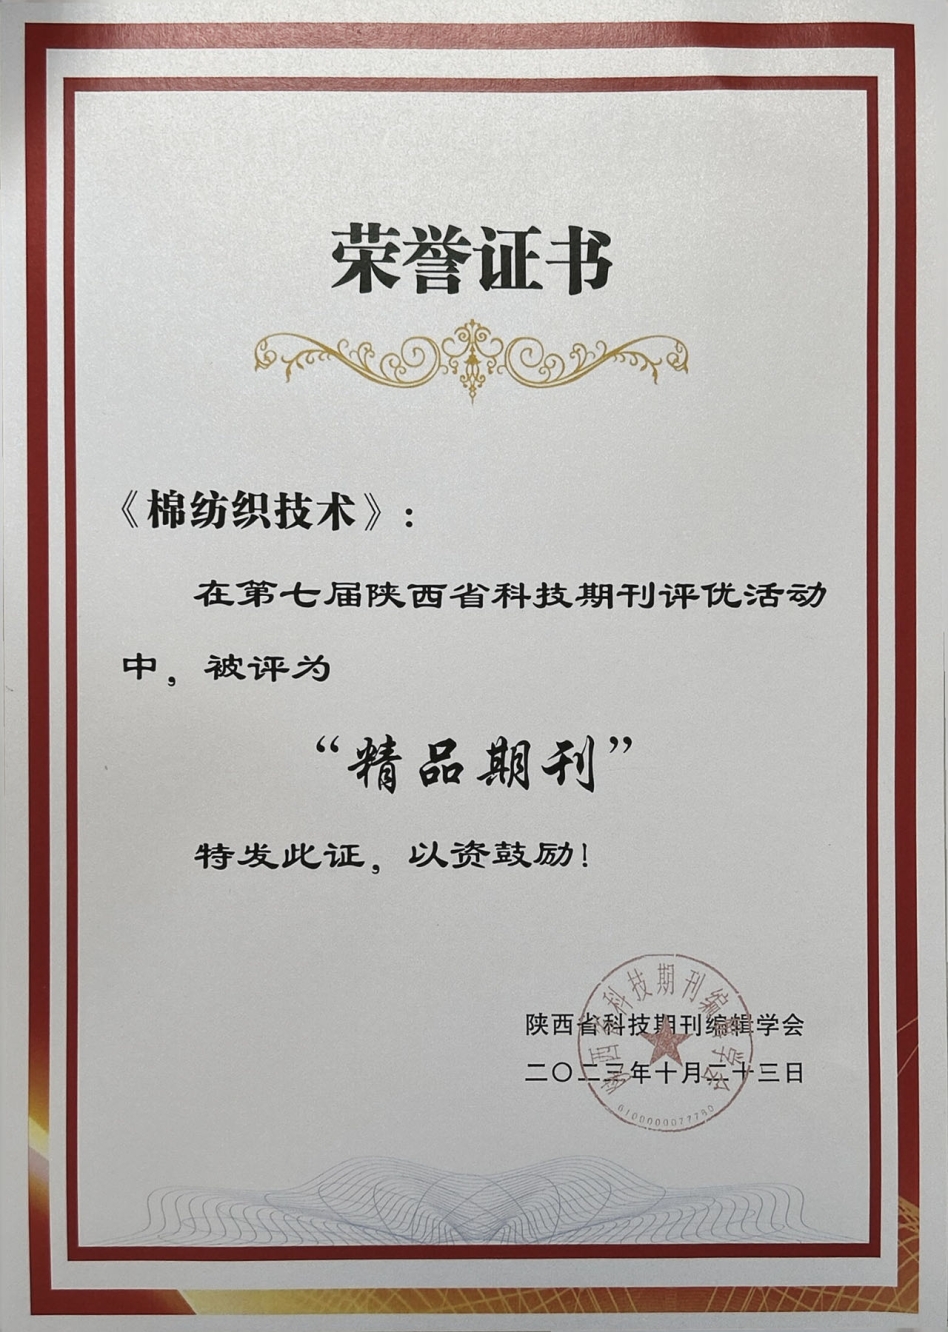 我院下属《棉纺织技术》期刊荣获“陕西省科技期刊精品奖”